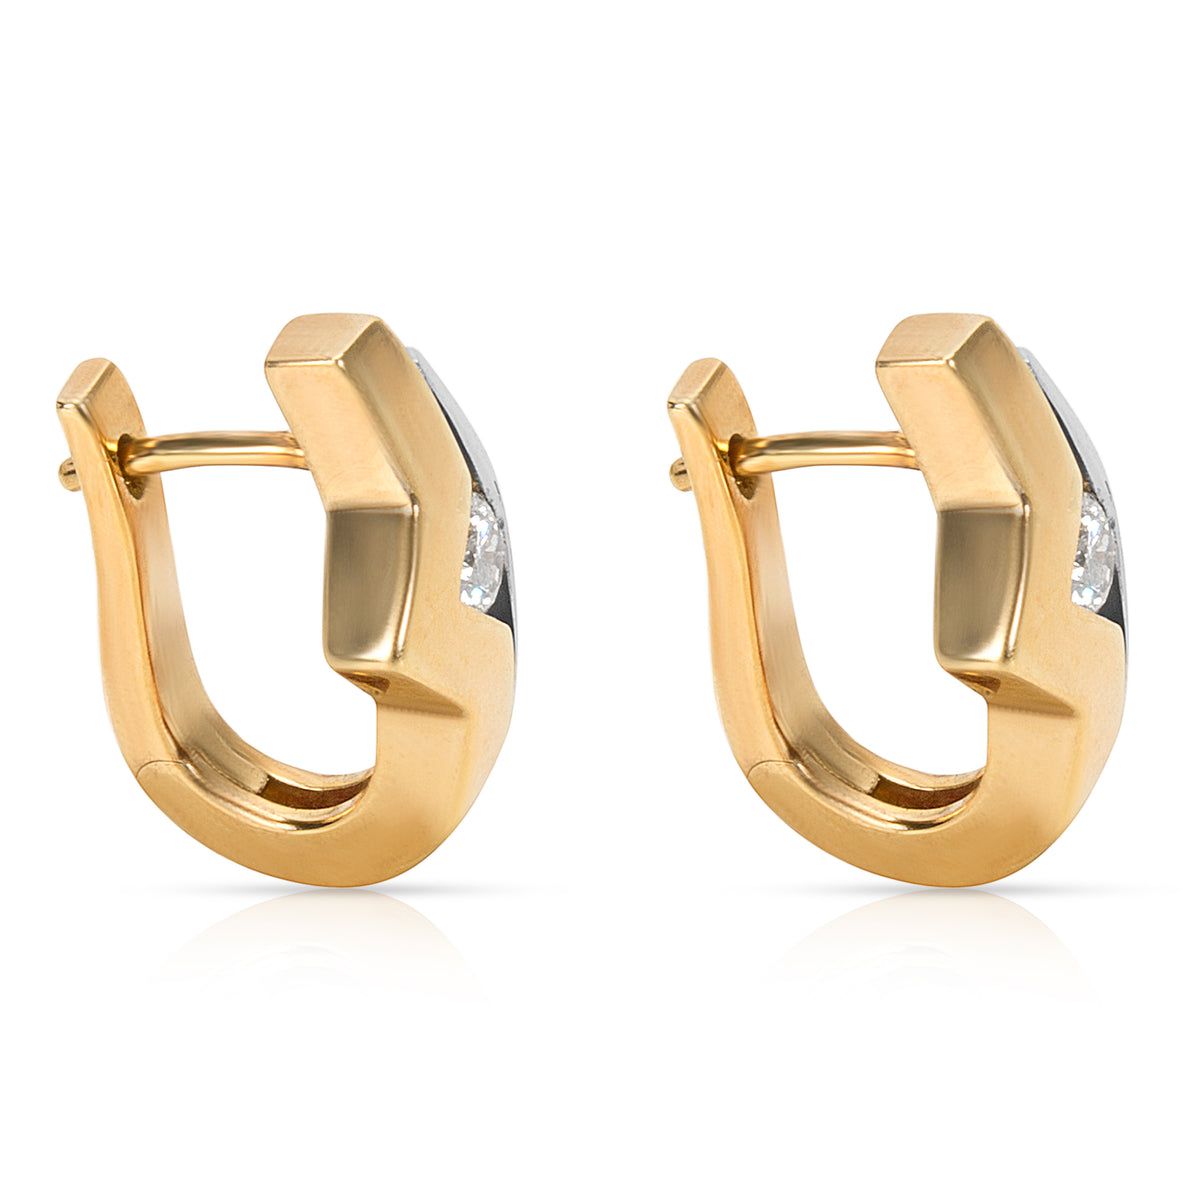 Diamond Earrings in 18K Two Tone Gold (0.30 CTW)